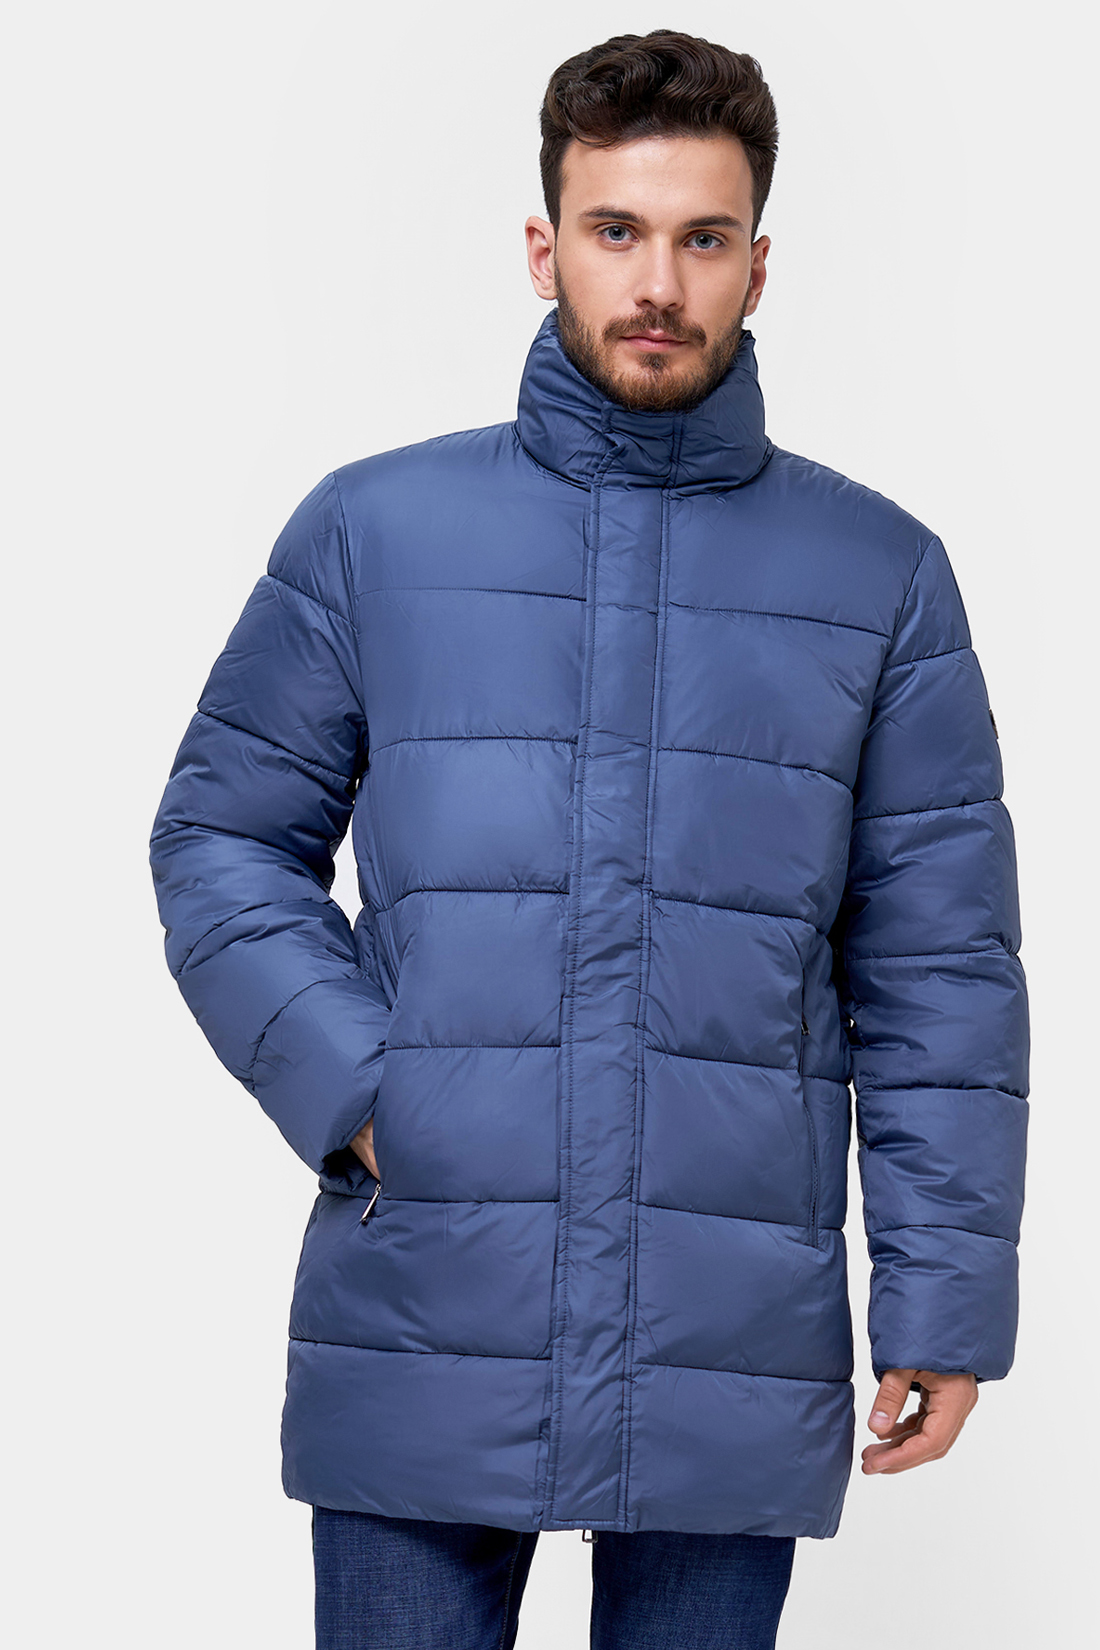 Куртка (Эко пух) (арт. baon B540502), размер XL, цвет синий